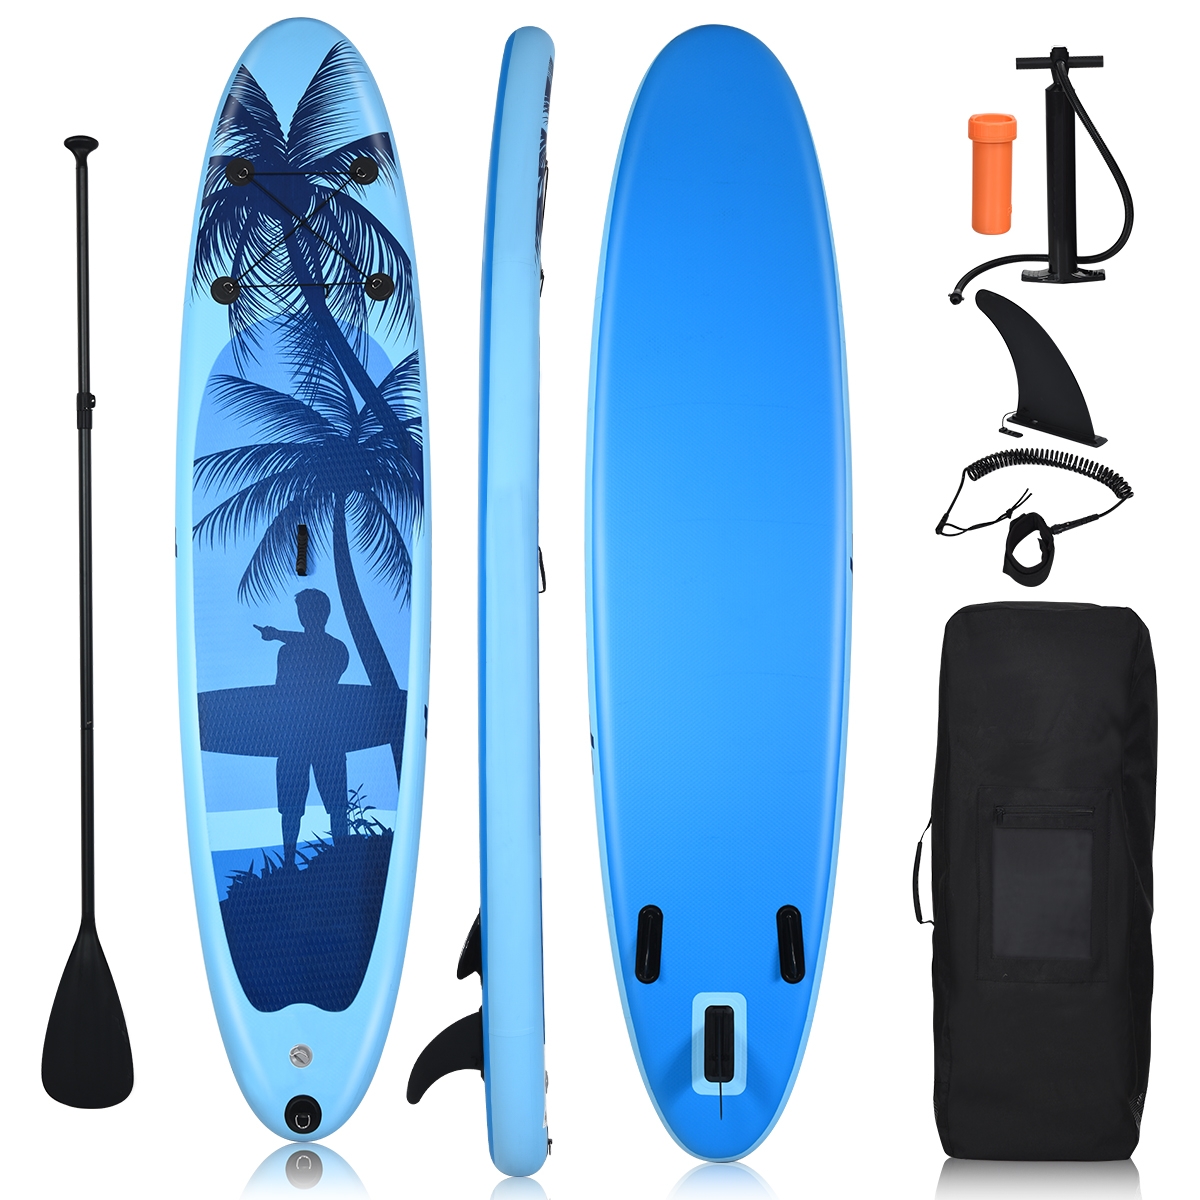 Costway Tavola da paddle surf gonfiabile in PVC durevole 305cm con pagaia regolabile, SUP gonfiabile per giovani e adulti Blu